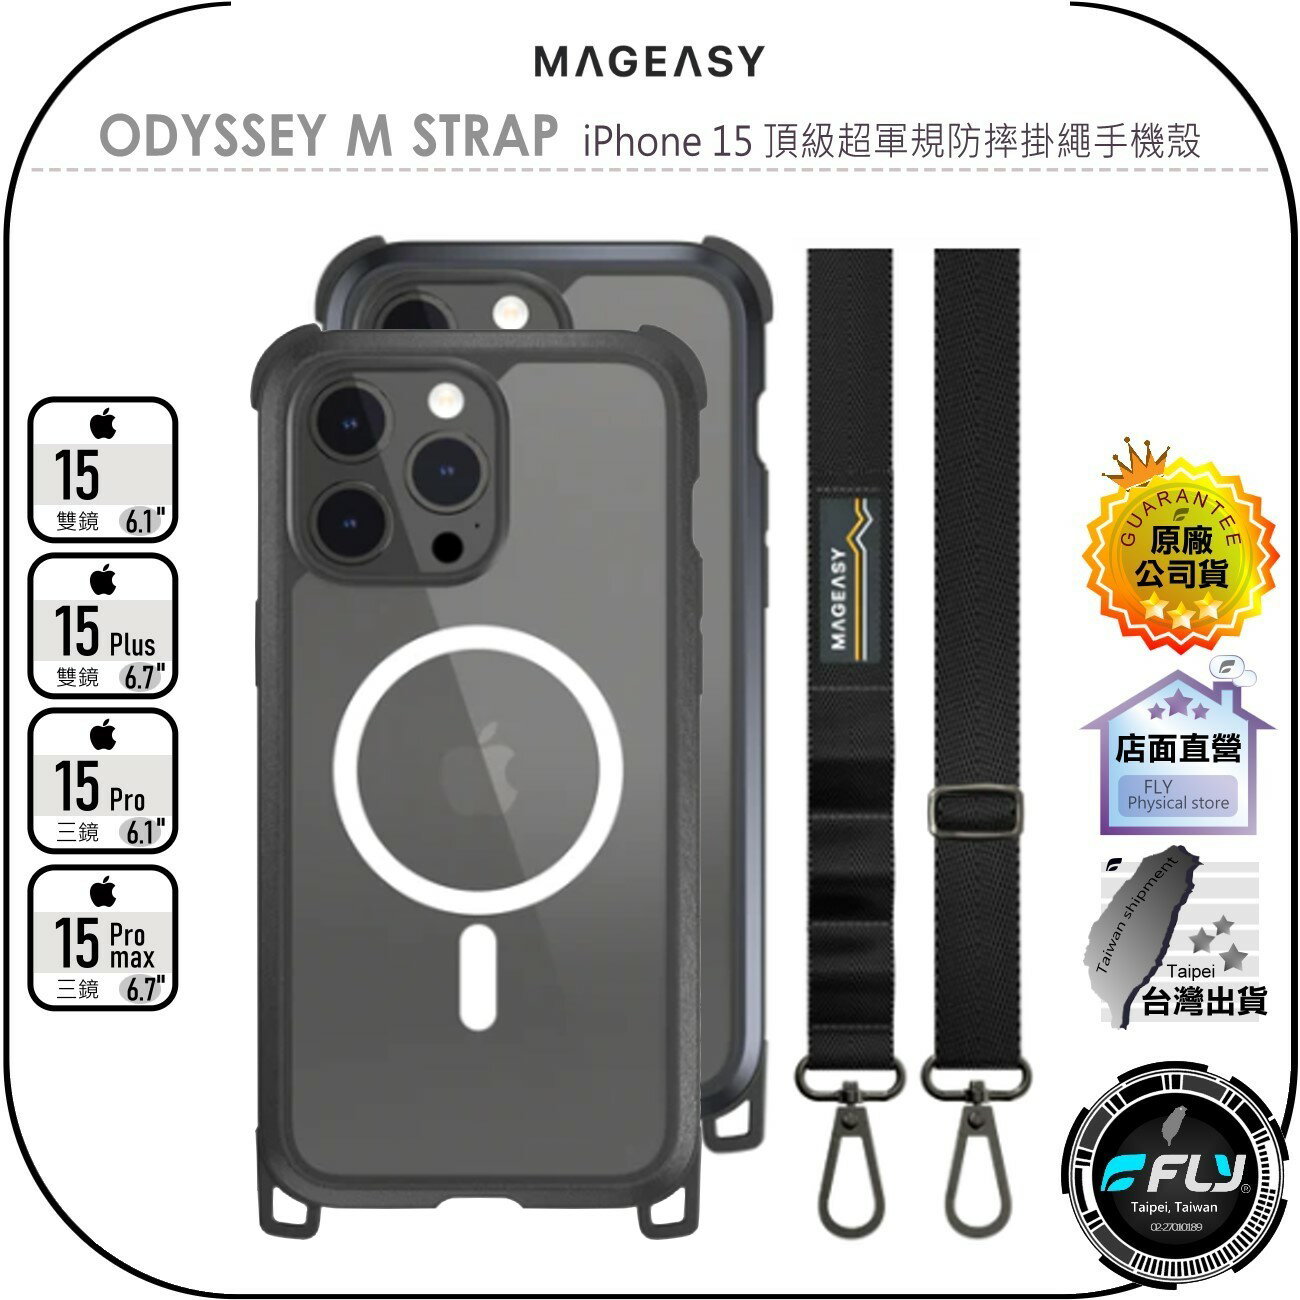 【飛翔商城】MAGEASY ODYSSEY M STRAP iPhone 15 頂級超軍規防摔掛繩手機殼◉Pro Max